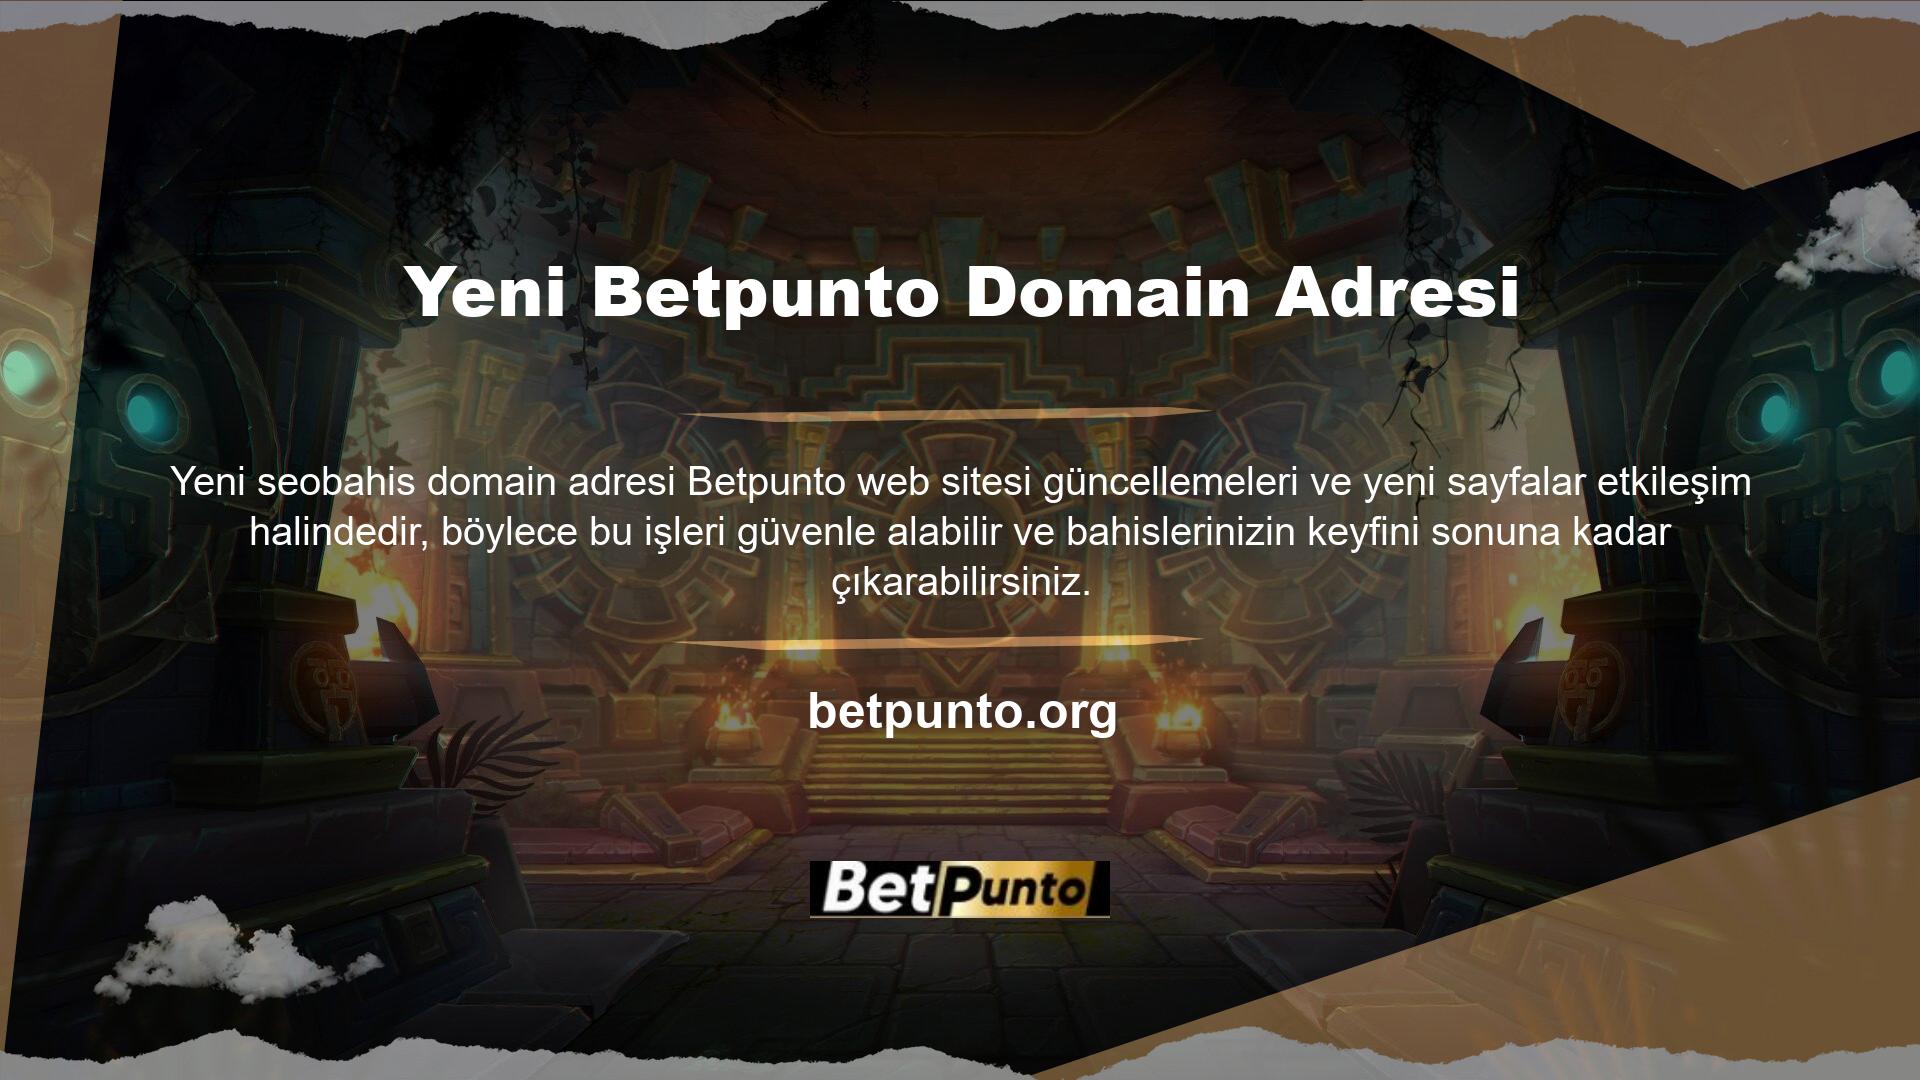 Betpunto her zamanki gibi alan adını şu adrese taşıdı: Tüm Türk oyuncular Betpunto adresini biliyor, bu yüzden sürekli değiştiği için alan adresini tekrar değiştirdim